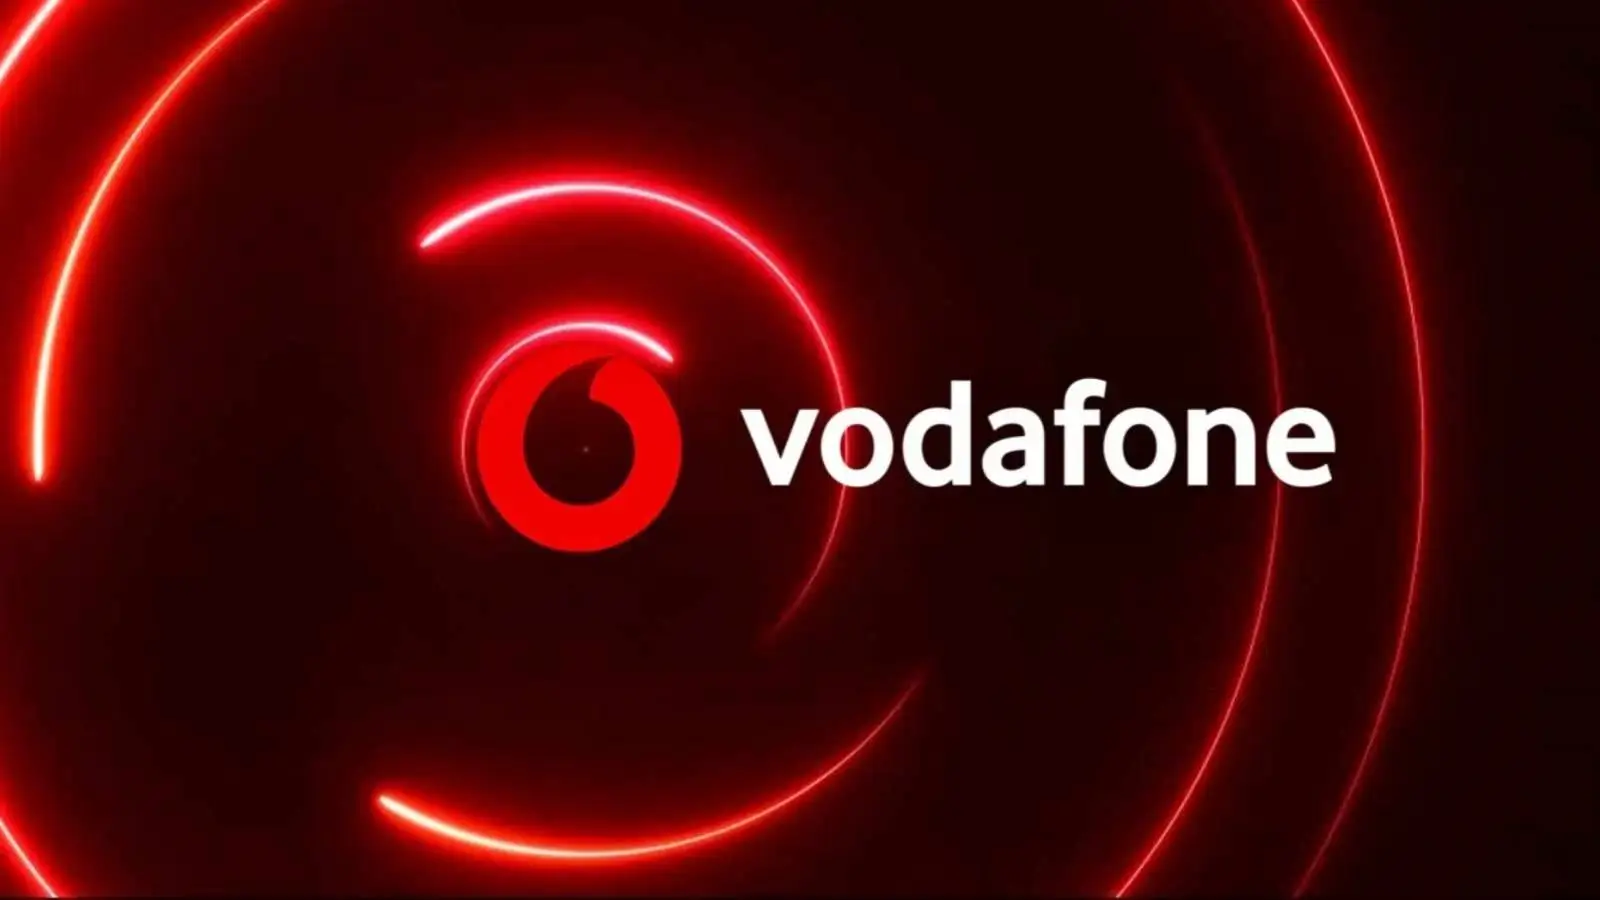 Vodafone Revolut anunció cuánto dinero dan GRATIS a los clientes rumanos